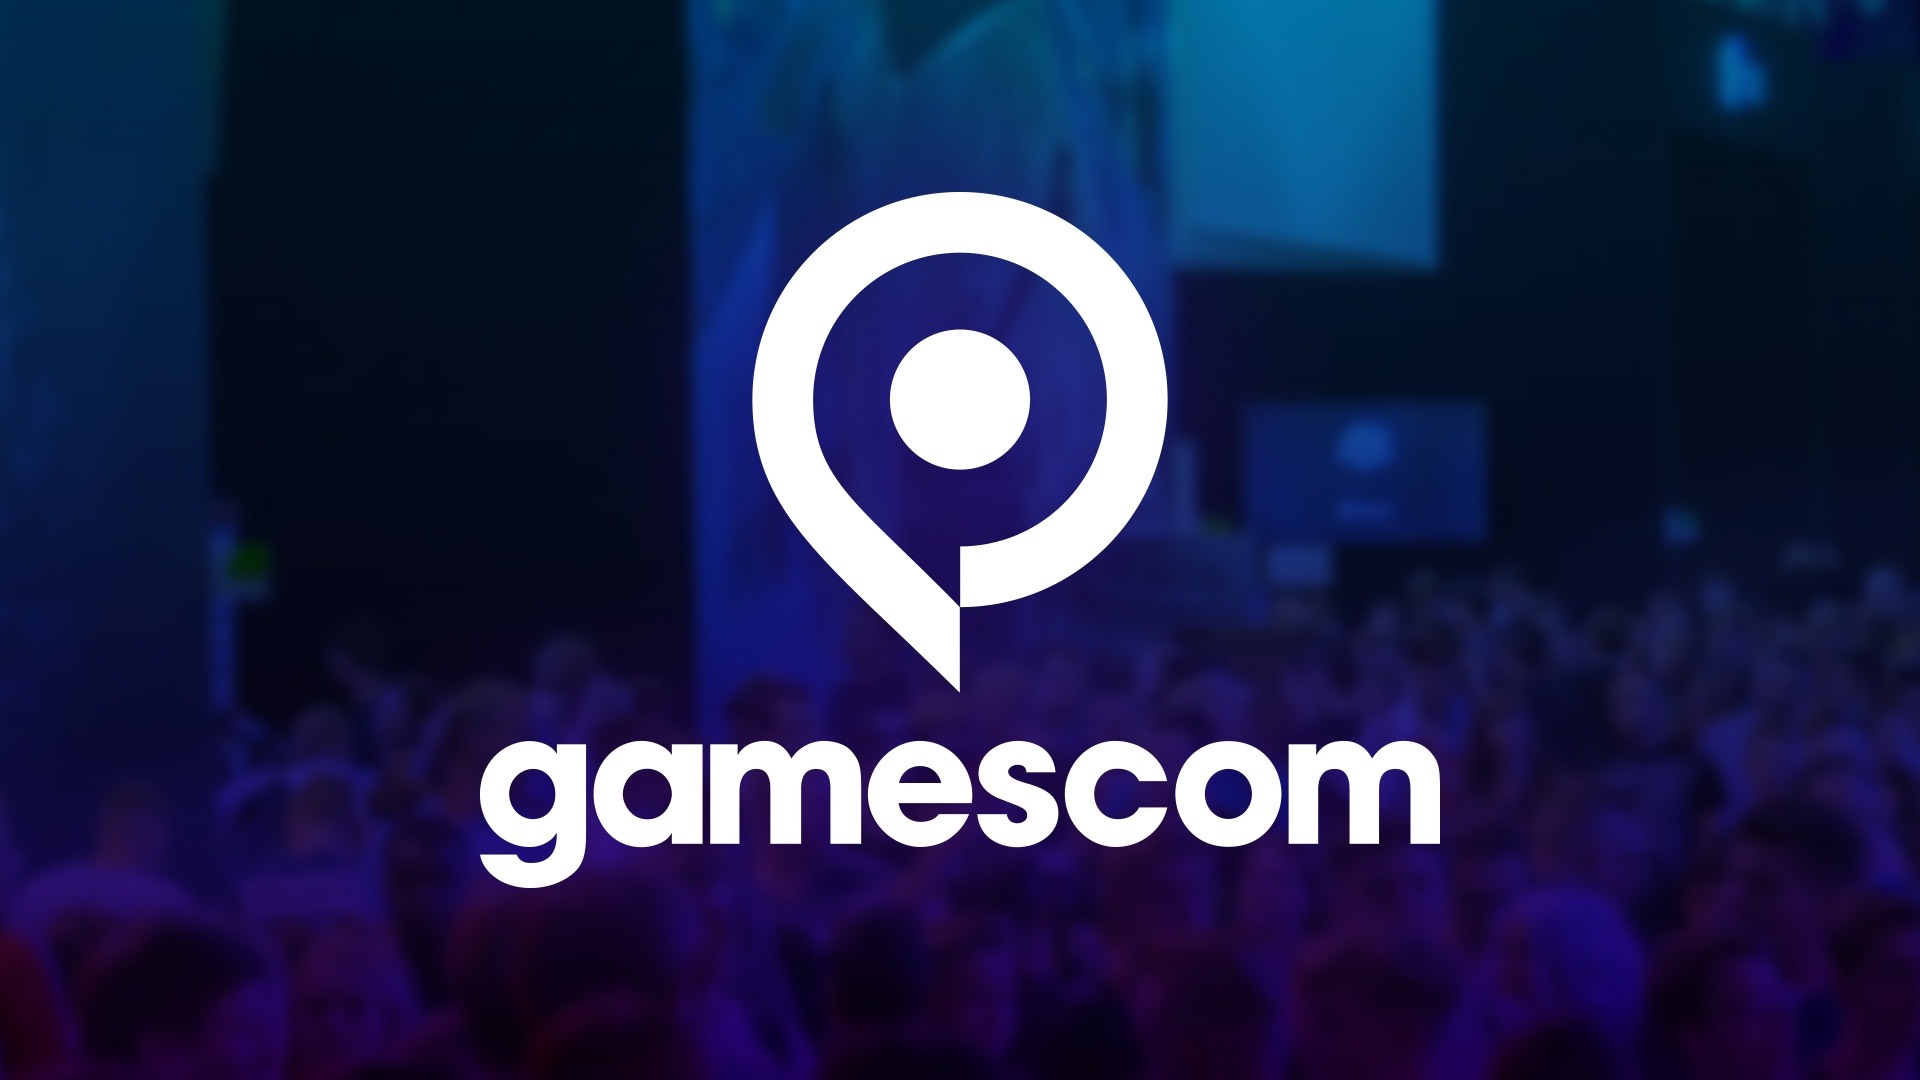 Gamescom 2021 digital